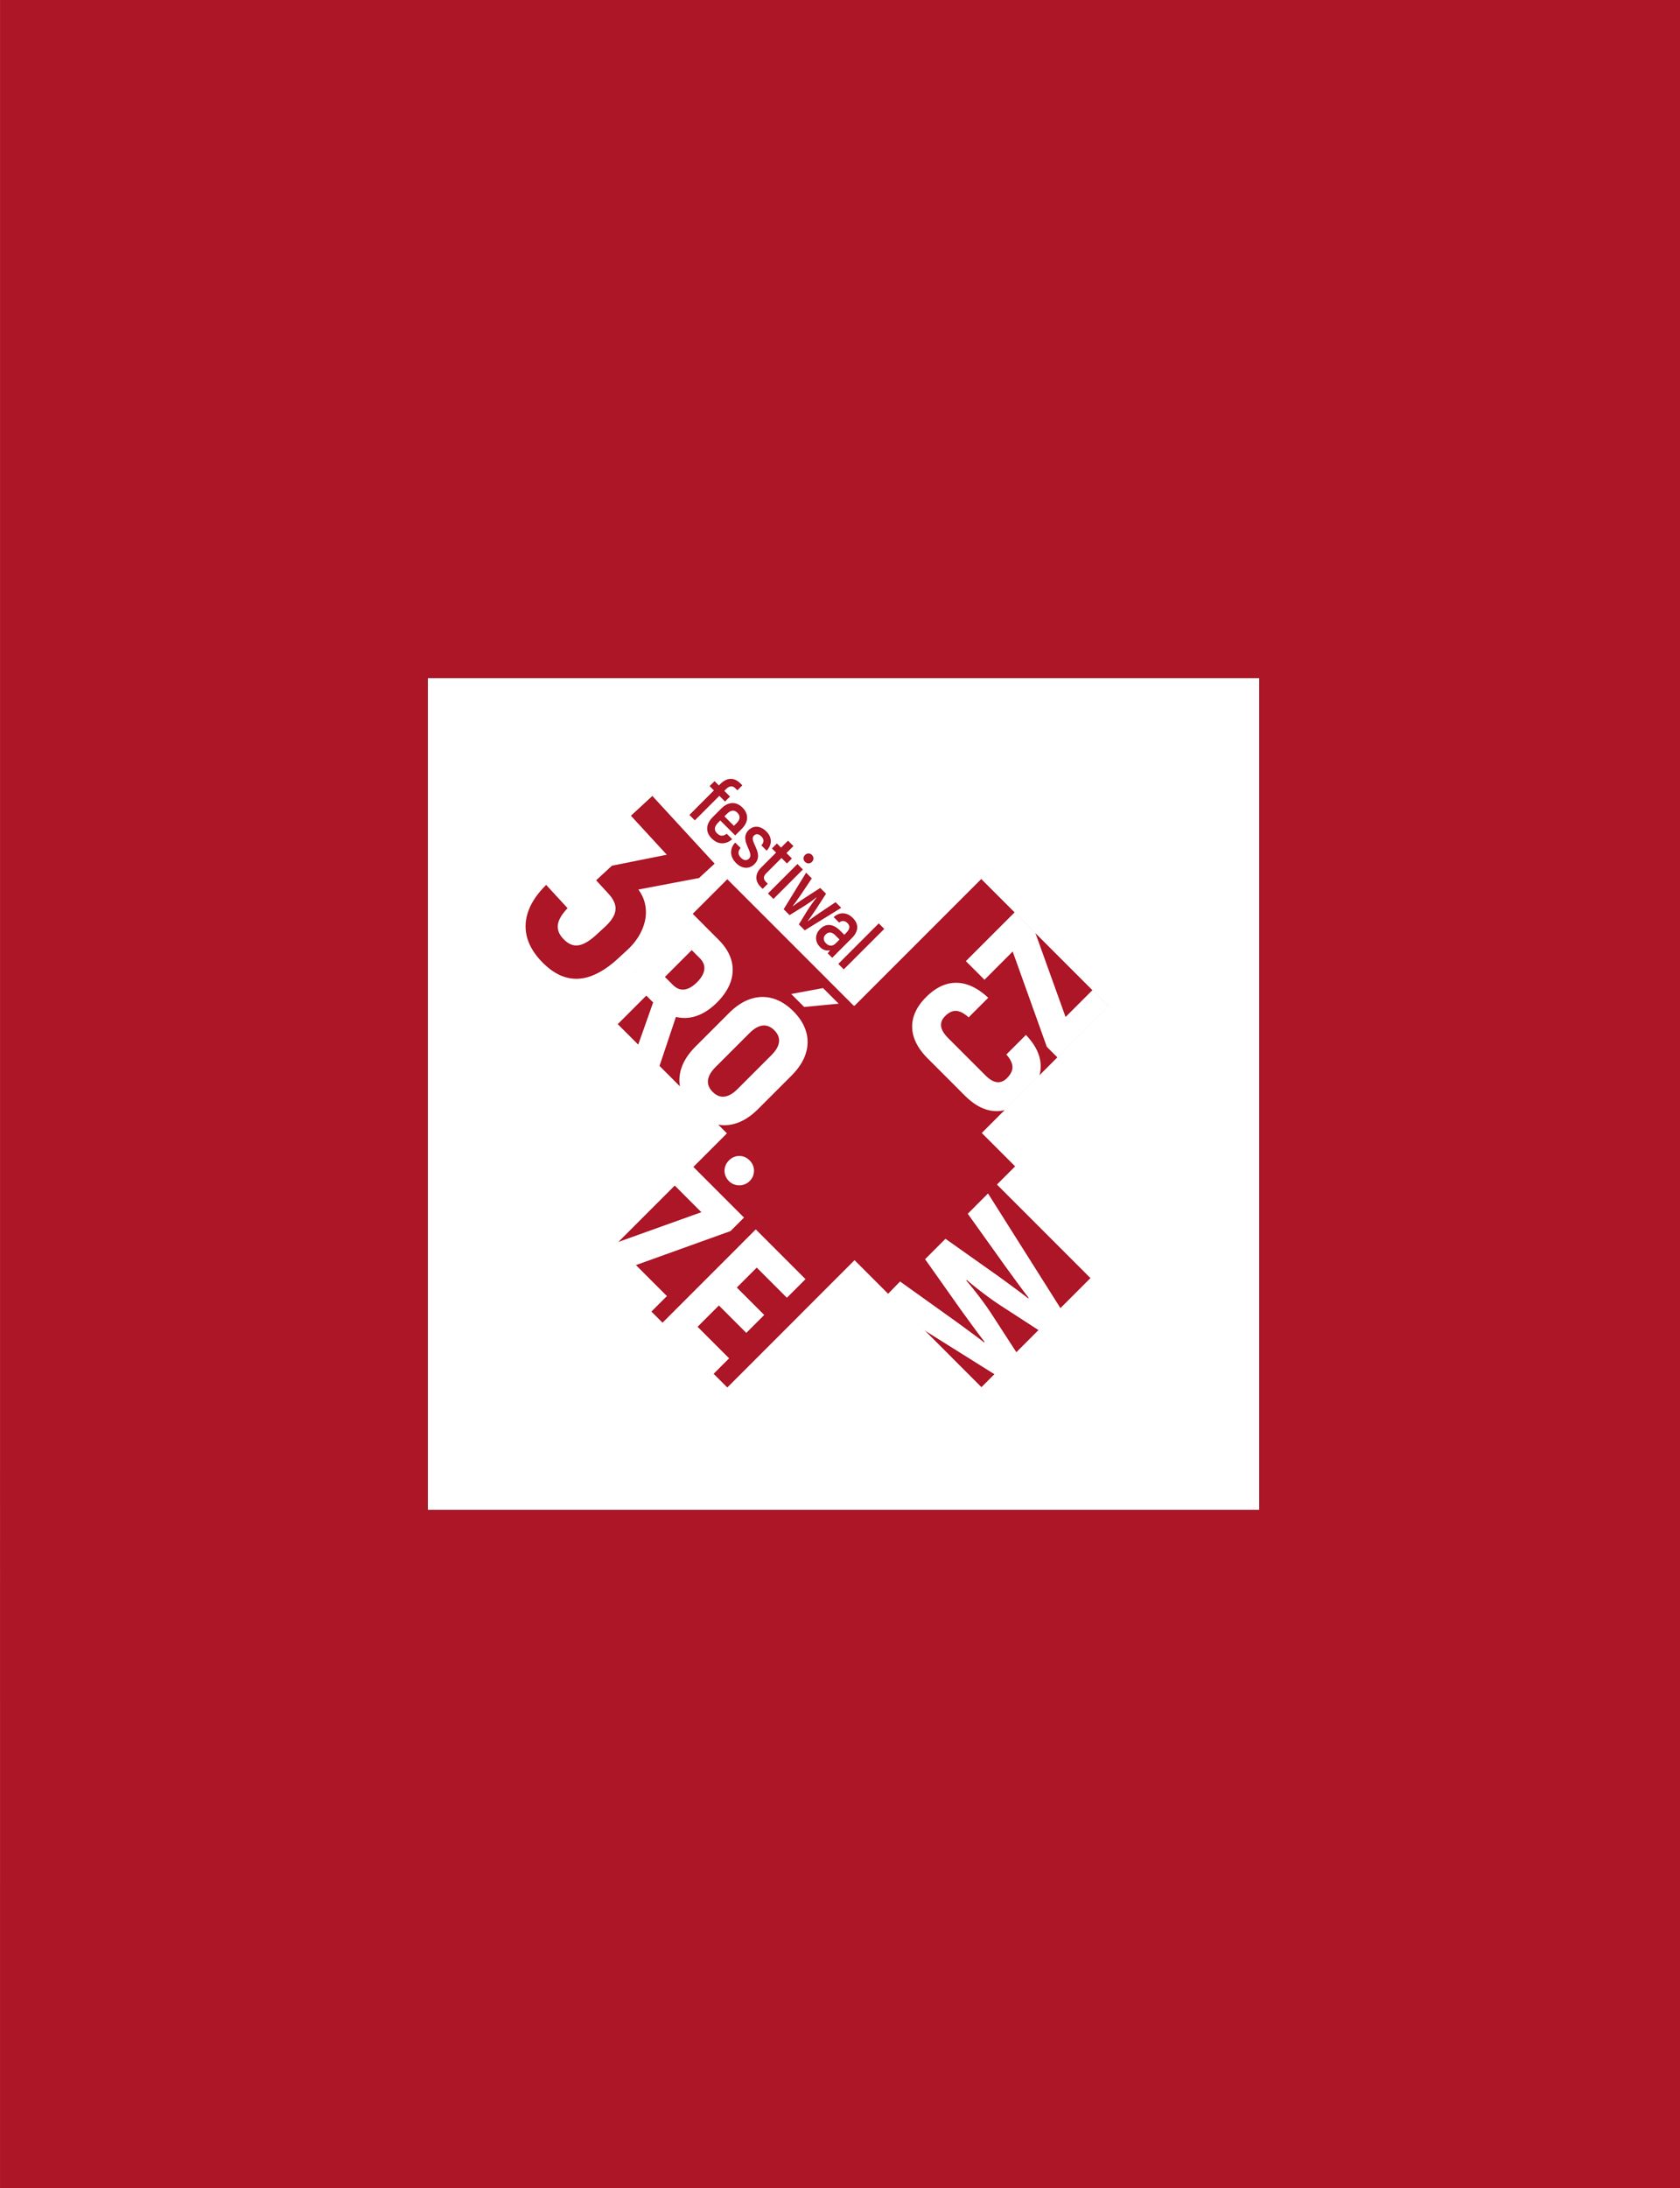 rozewicz-2022-logo